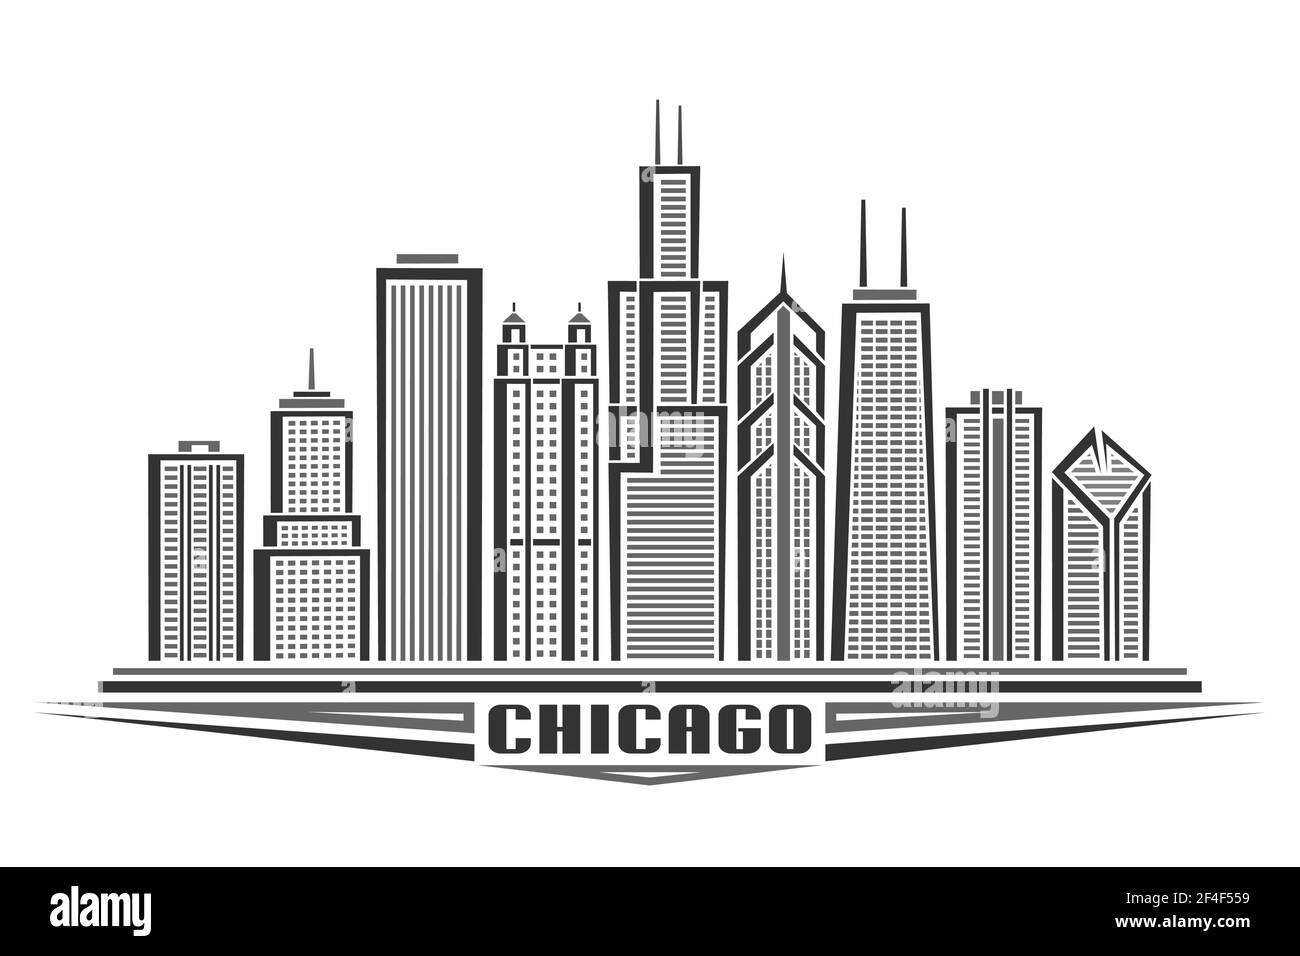 Vektor-Illustration von Chicago City, horizontal monochrome Poster mit Linie Art Design chicago Stadtbild, Urban american Konzept mit einzigartigen Dekorati Stock Vektor